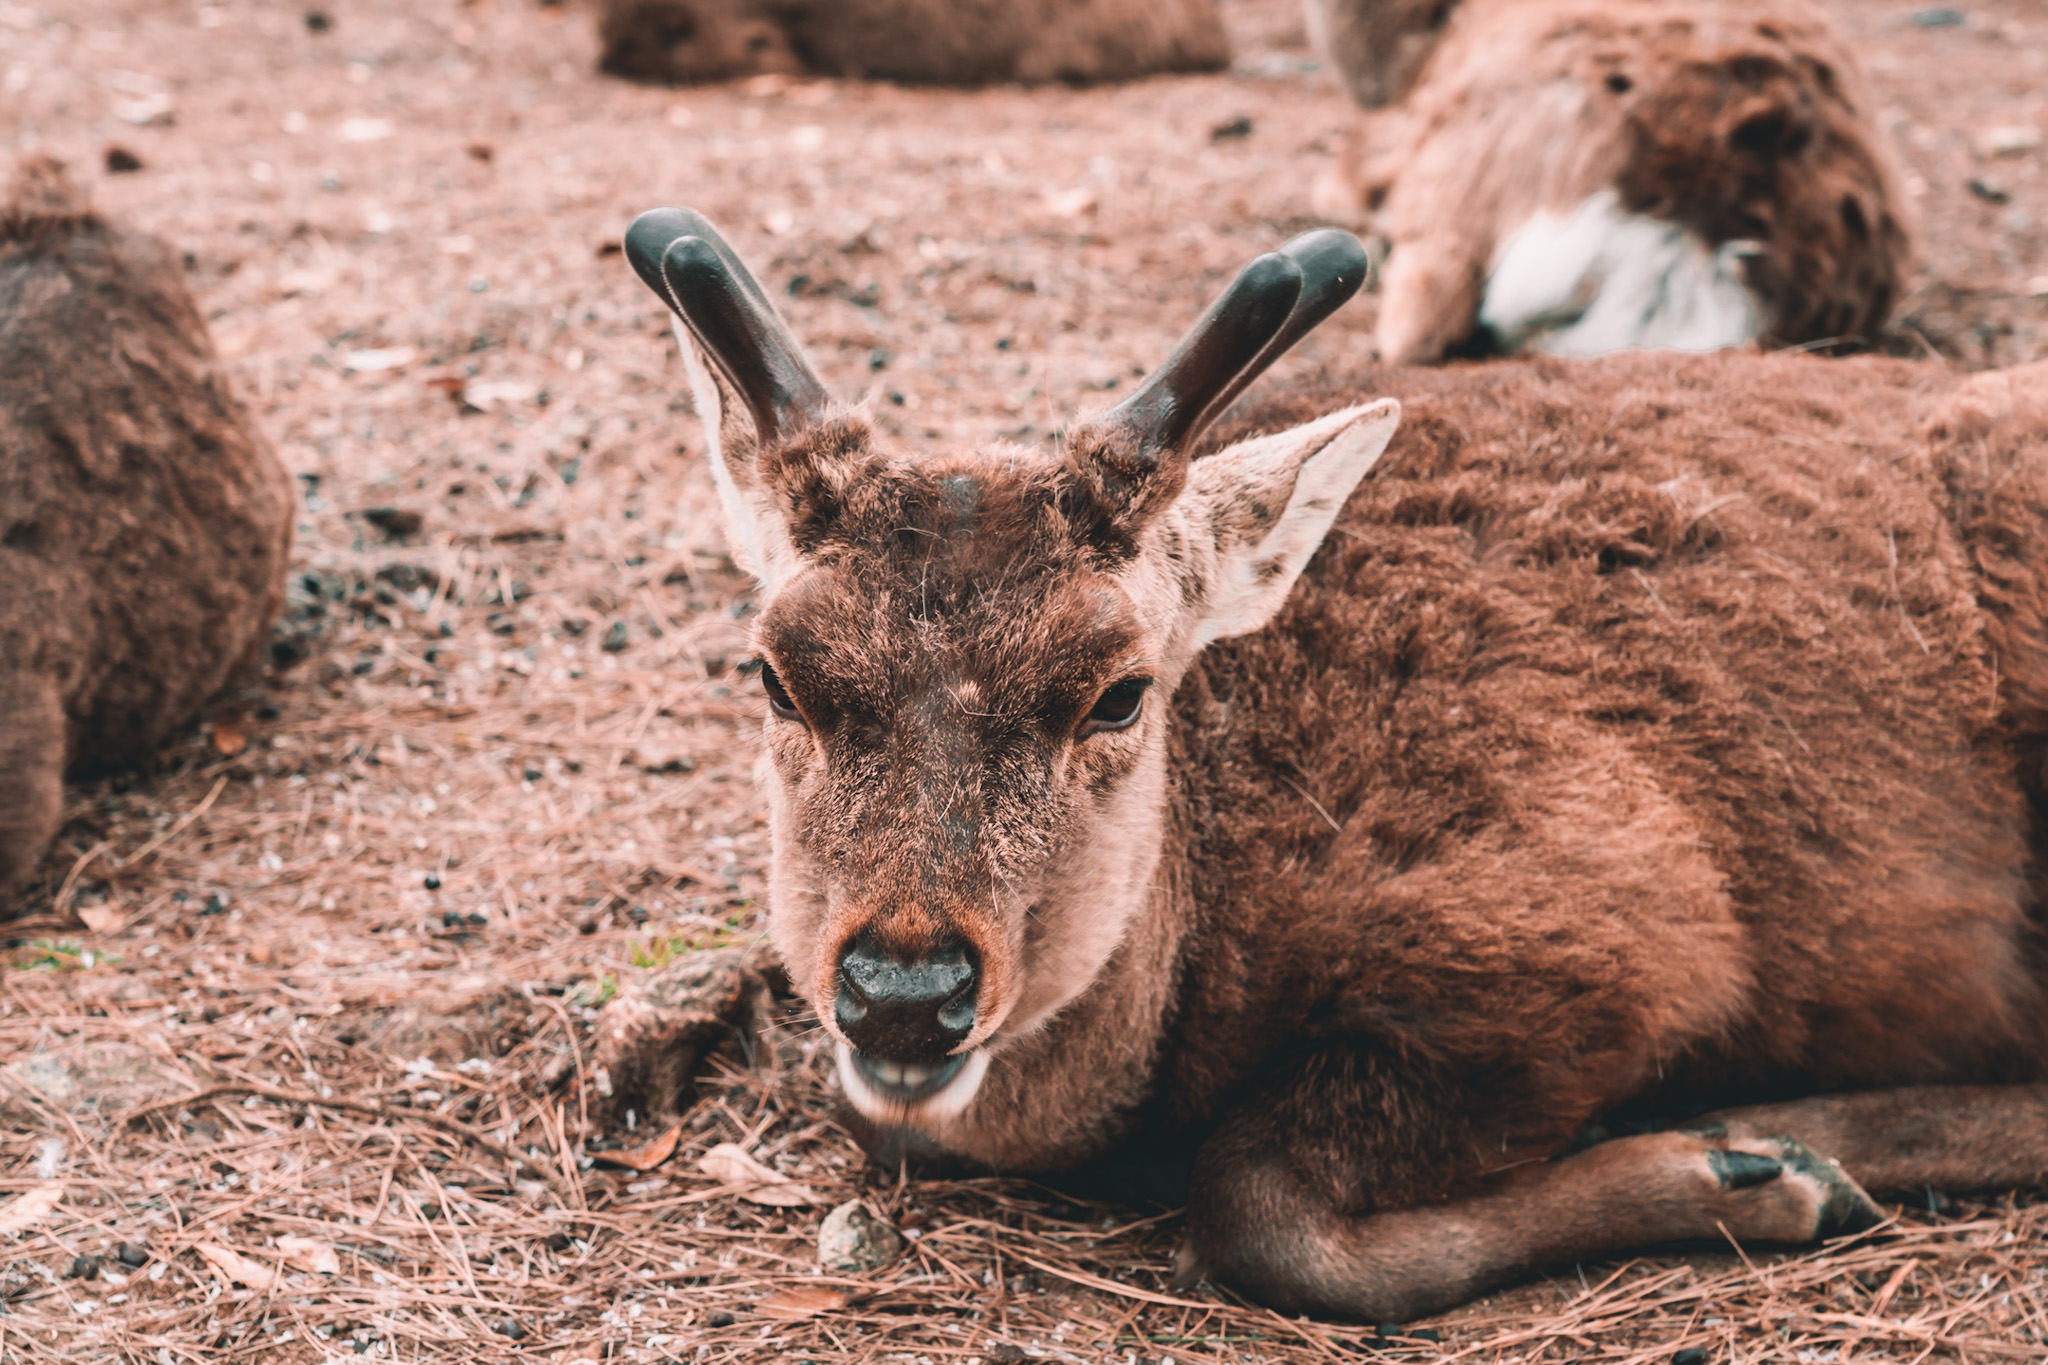 Bowing deer in Nara, Japan by Annie Miller